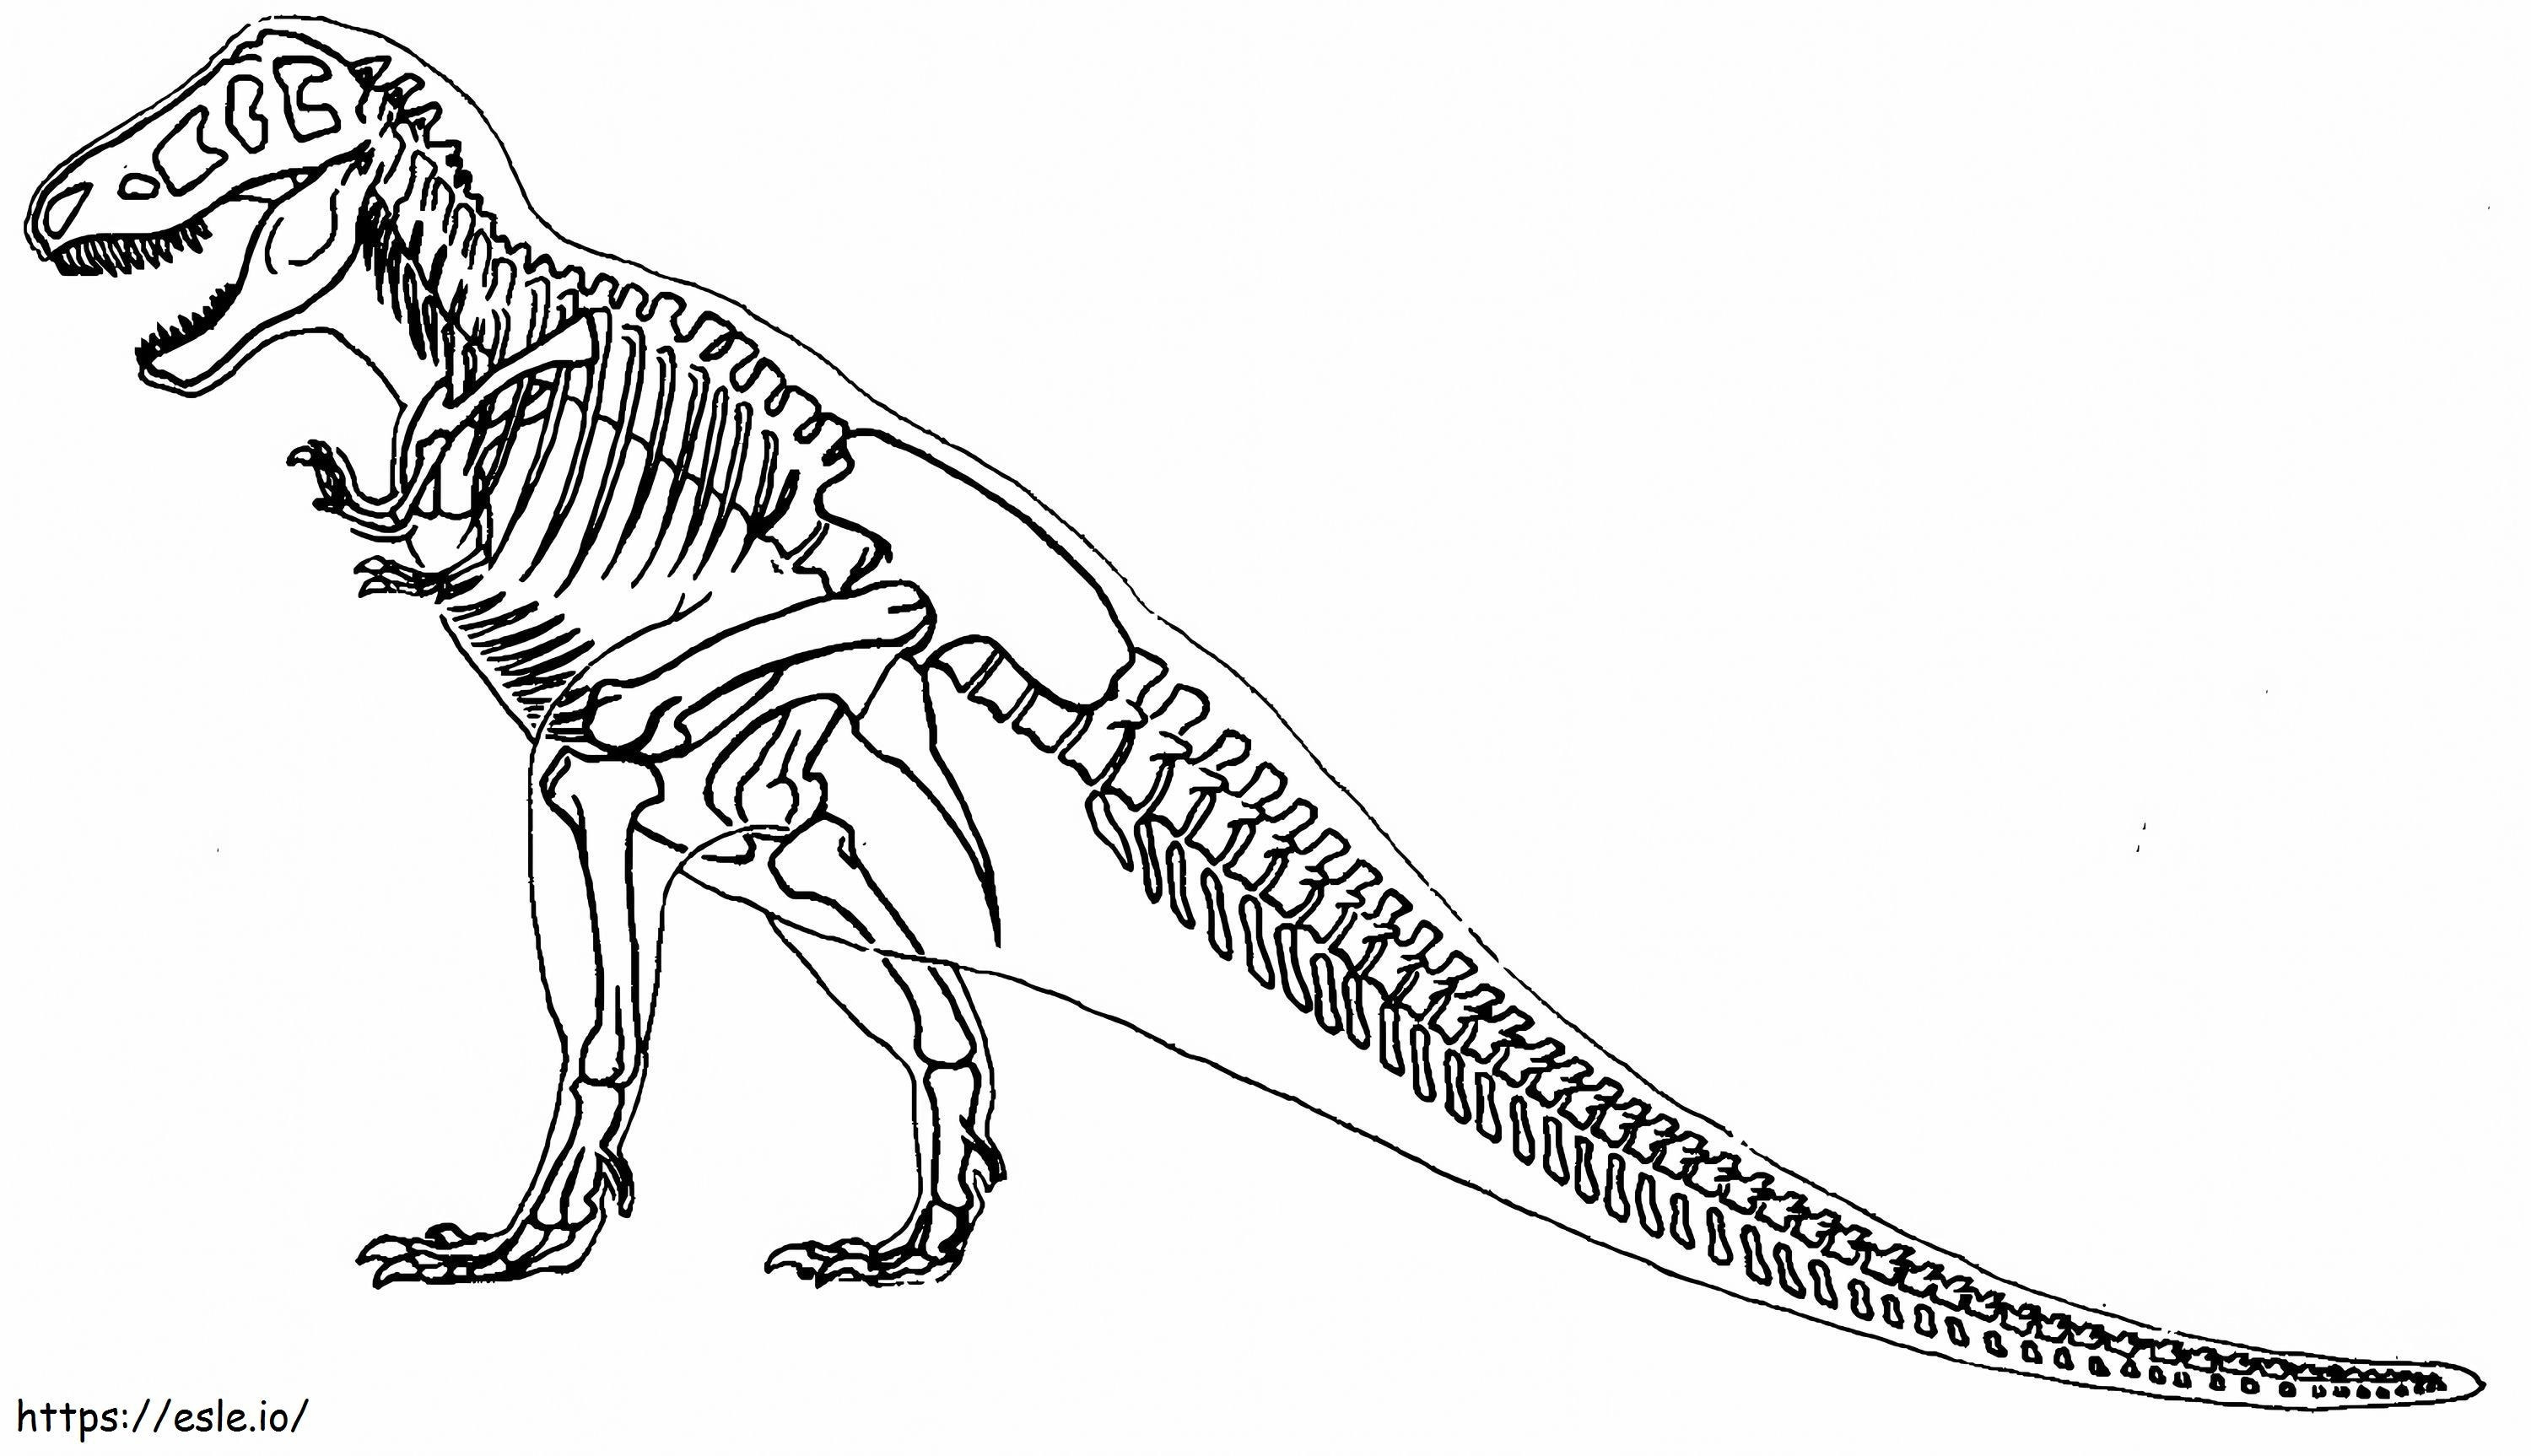 Esqueleto del tiranosaurio rex para colorear